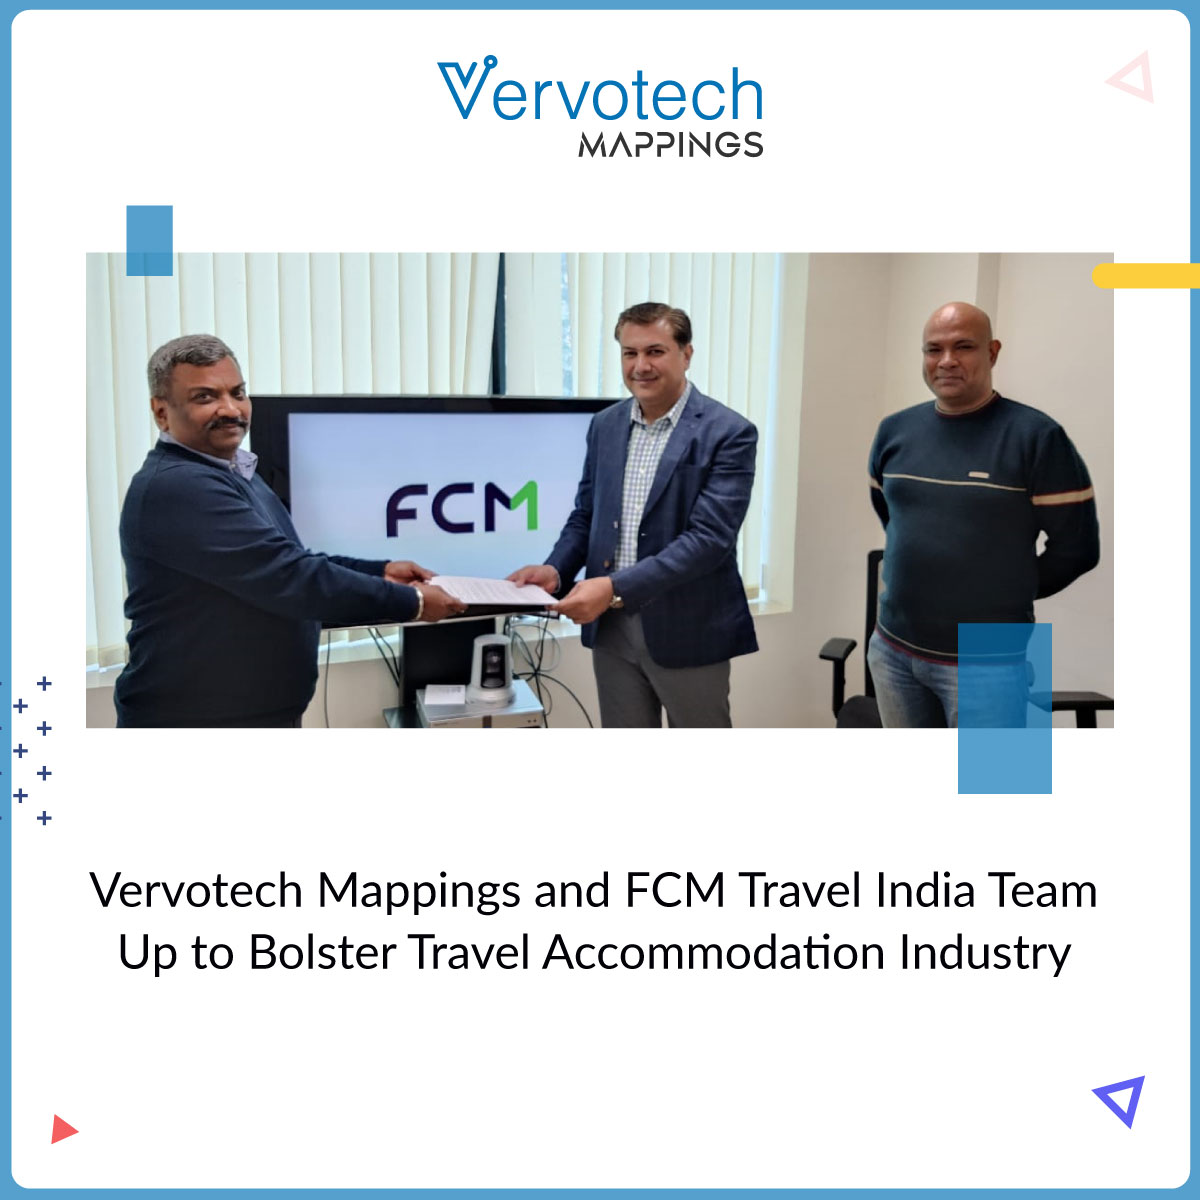 Vervotech Mappings y FCM Travel India se unen para reforzar el sector del alojamiento de viajes